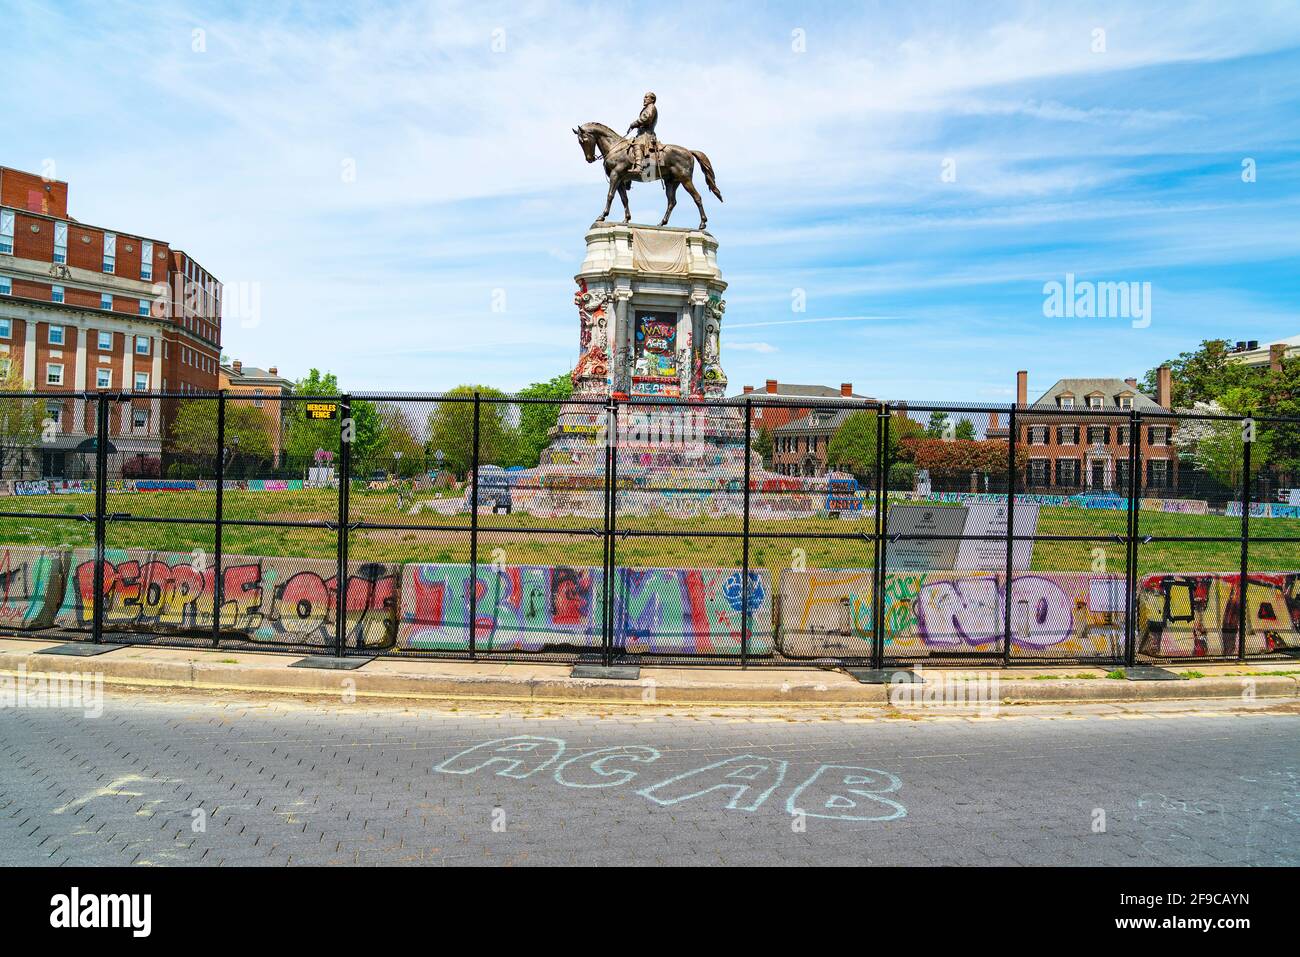 El Monumento a Robert E. Lee en Richmond, Virginia, Estados Unidos cubrió graffiti después de protestas contra los Monumentos Confederados en la ciudad. Foto de stock